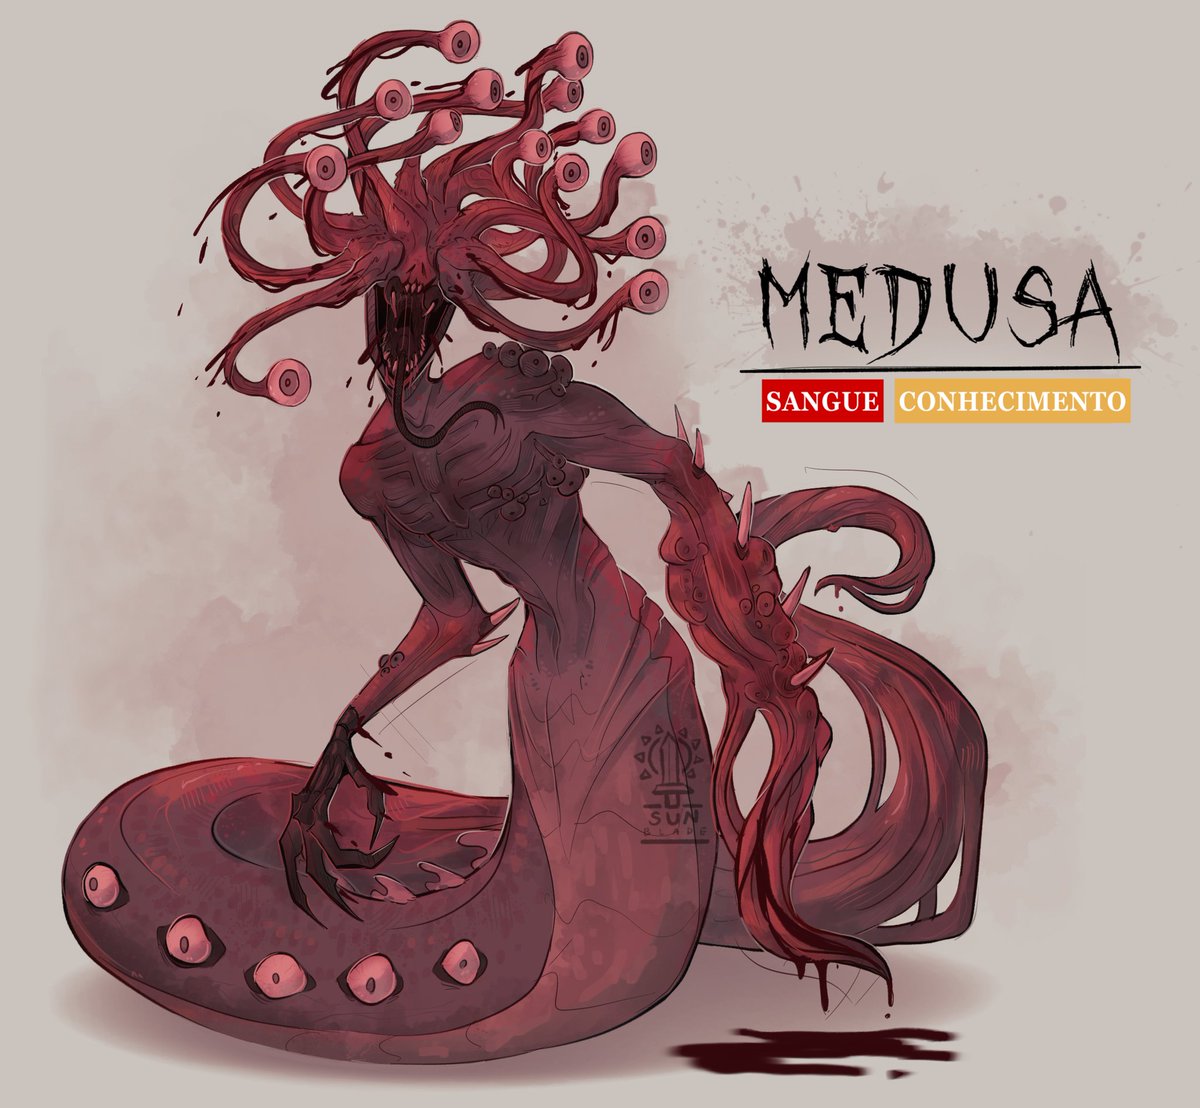 También le quise hacer diseño a la Medusinha 🤙 #ordemparanormal